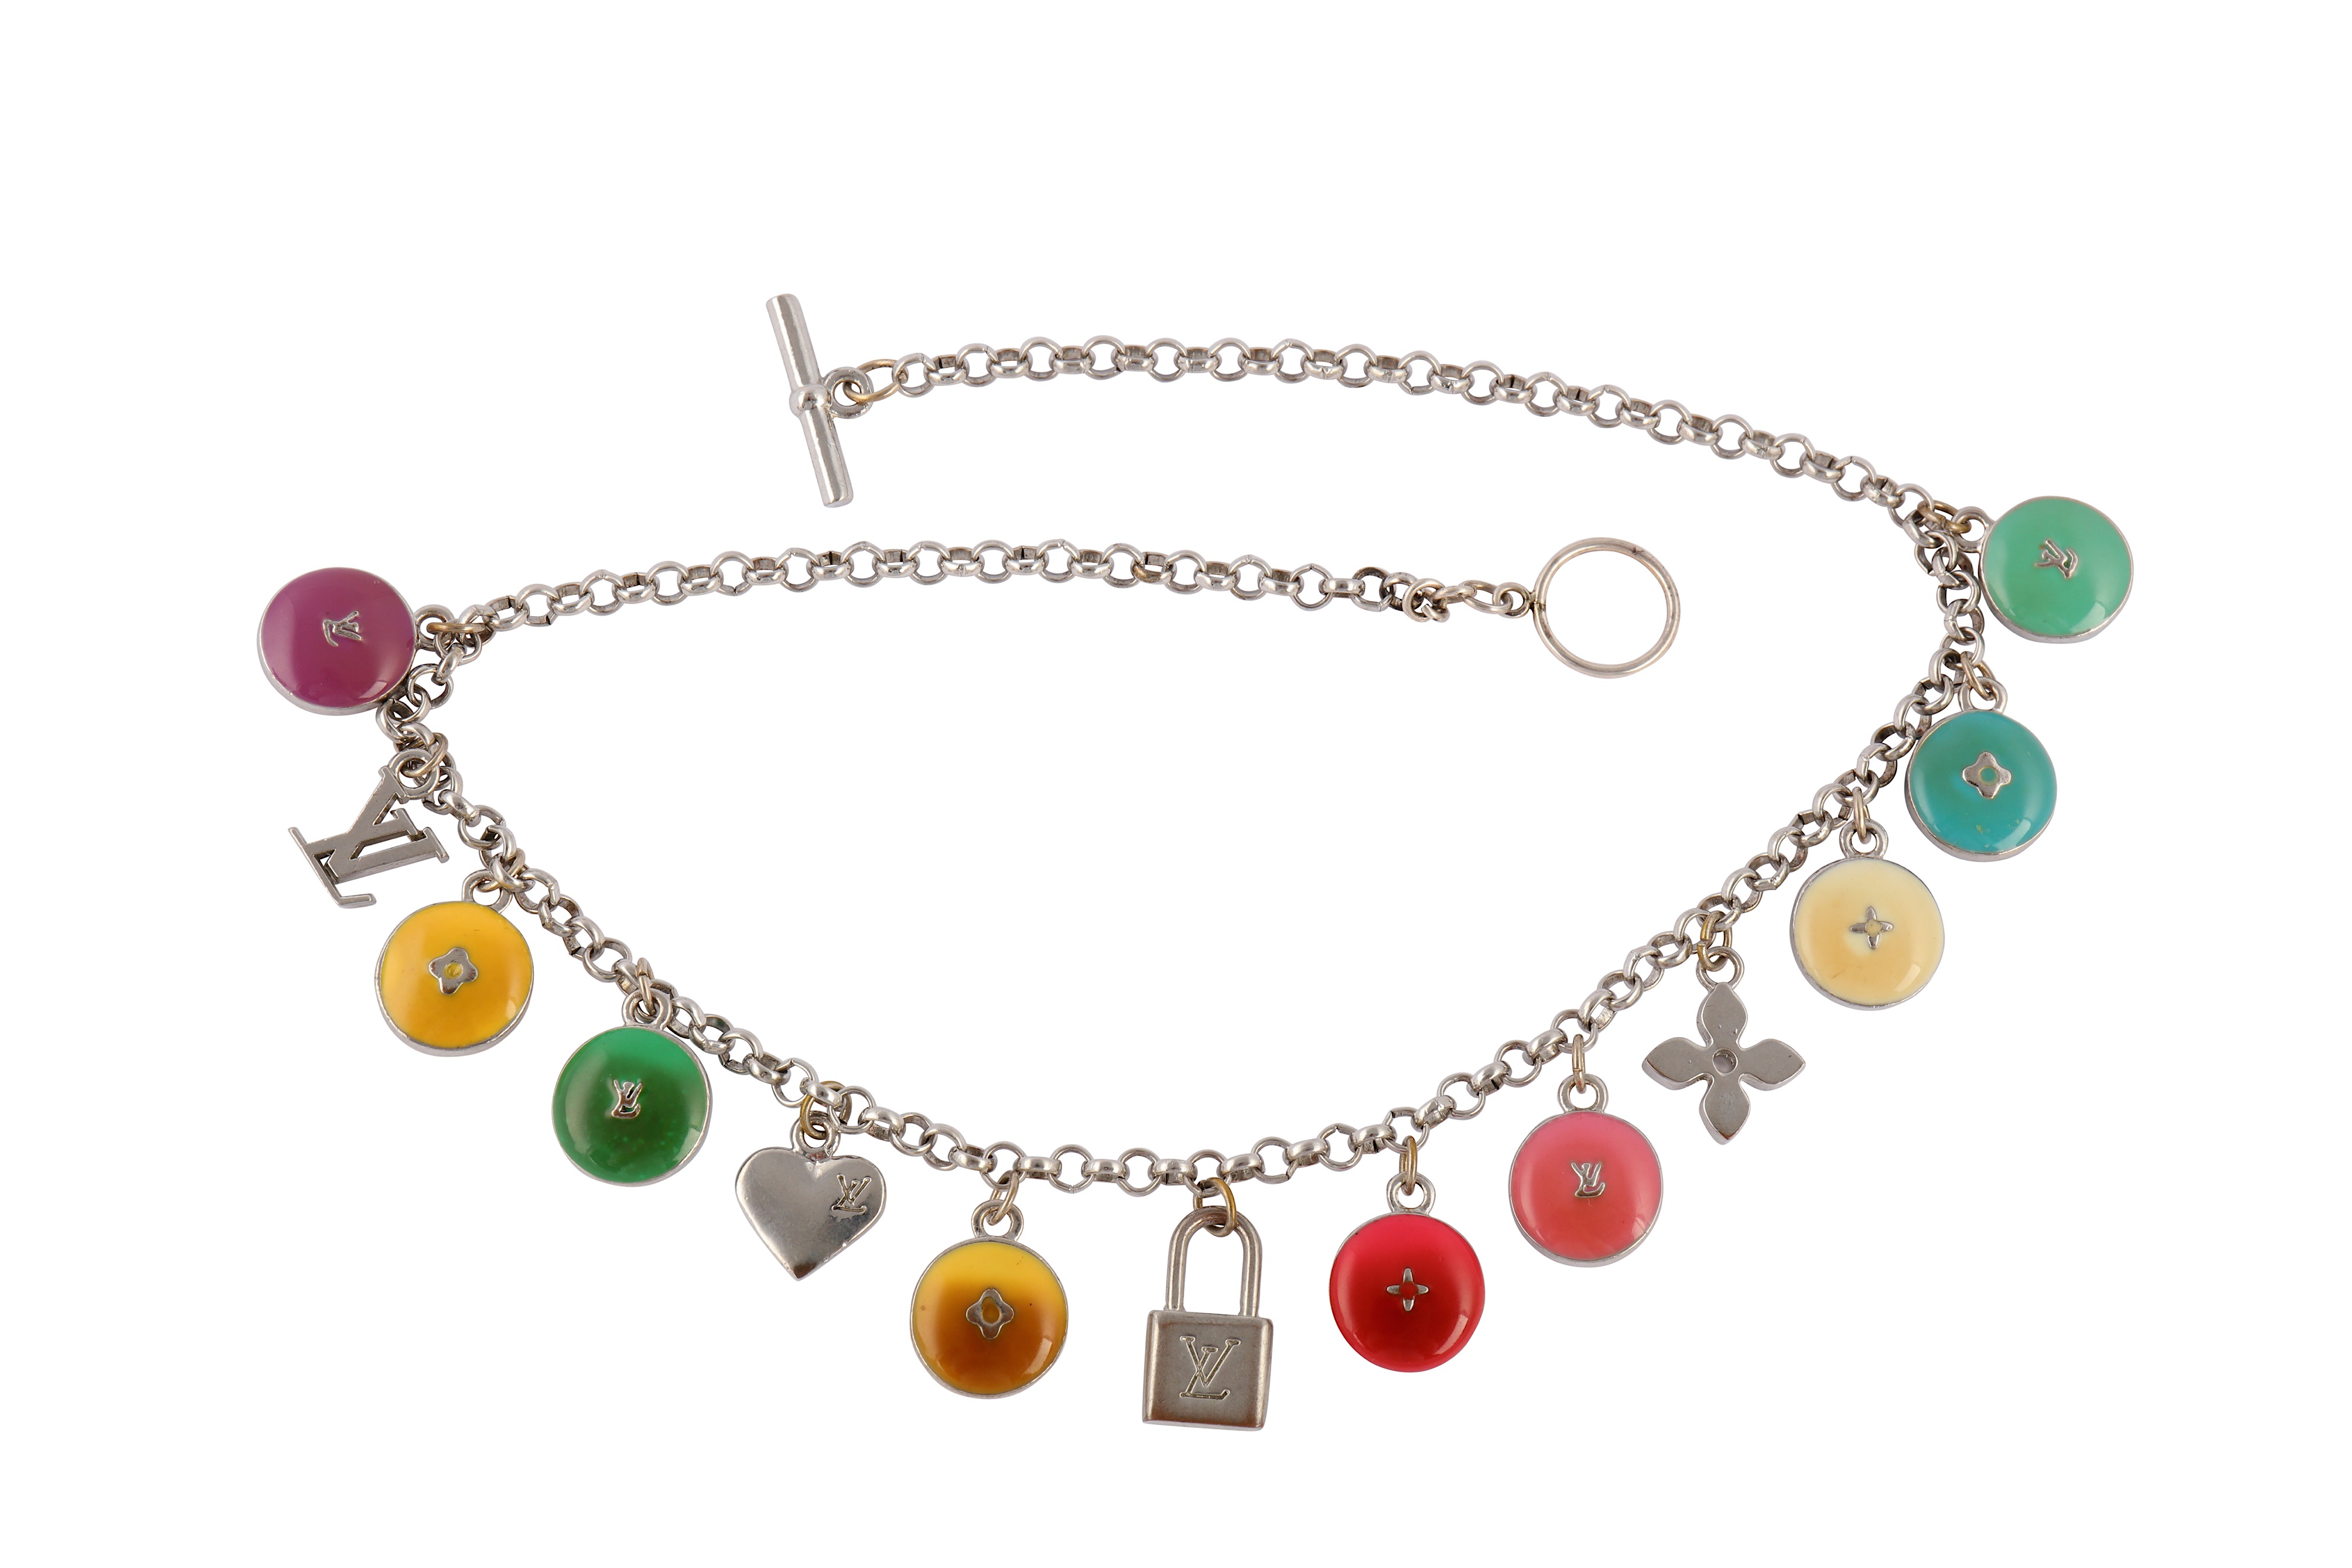 Louis Vuitton Multicolor Beads Necklace